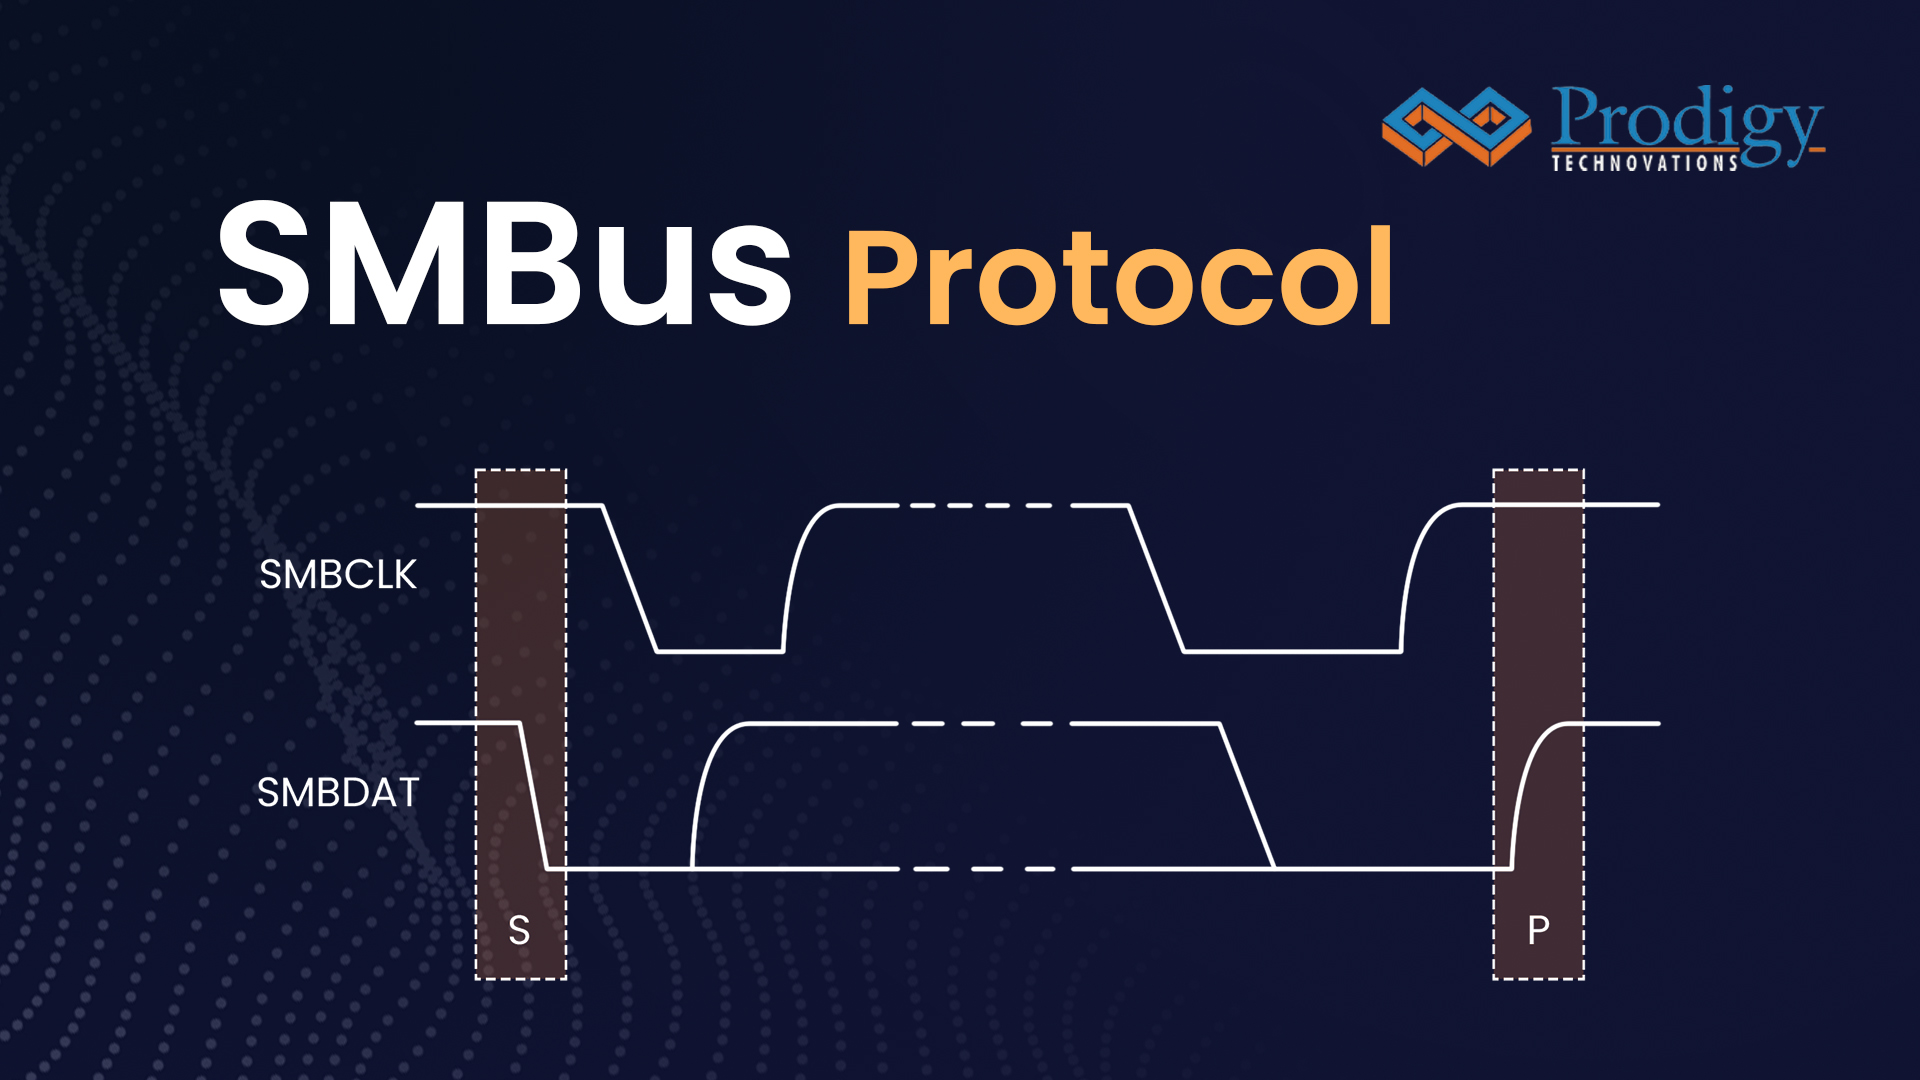 SMBus Protocol